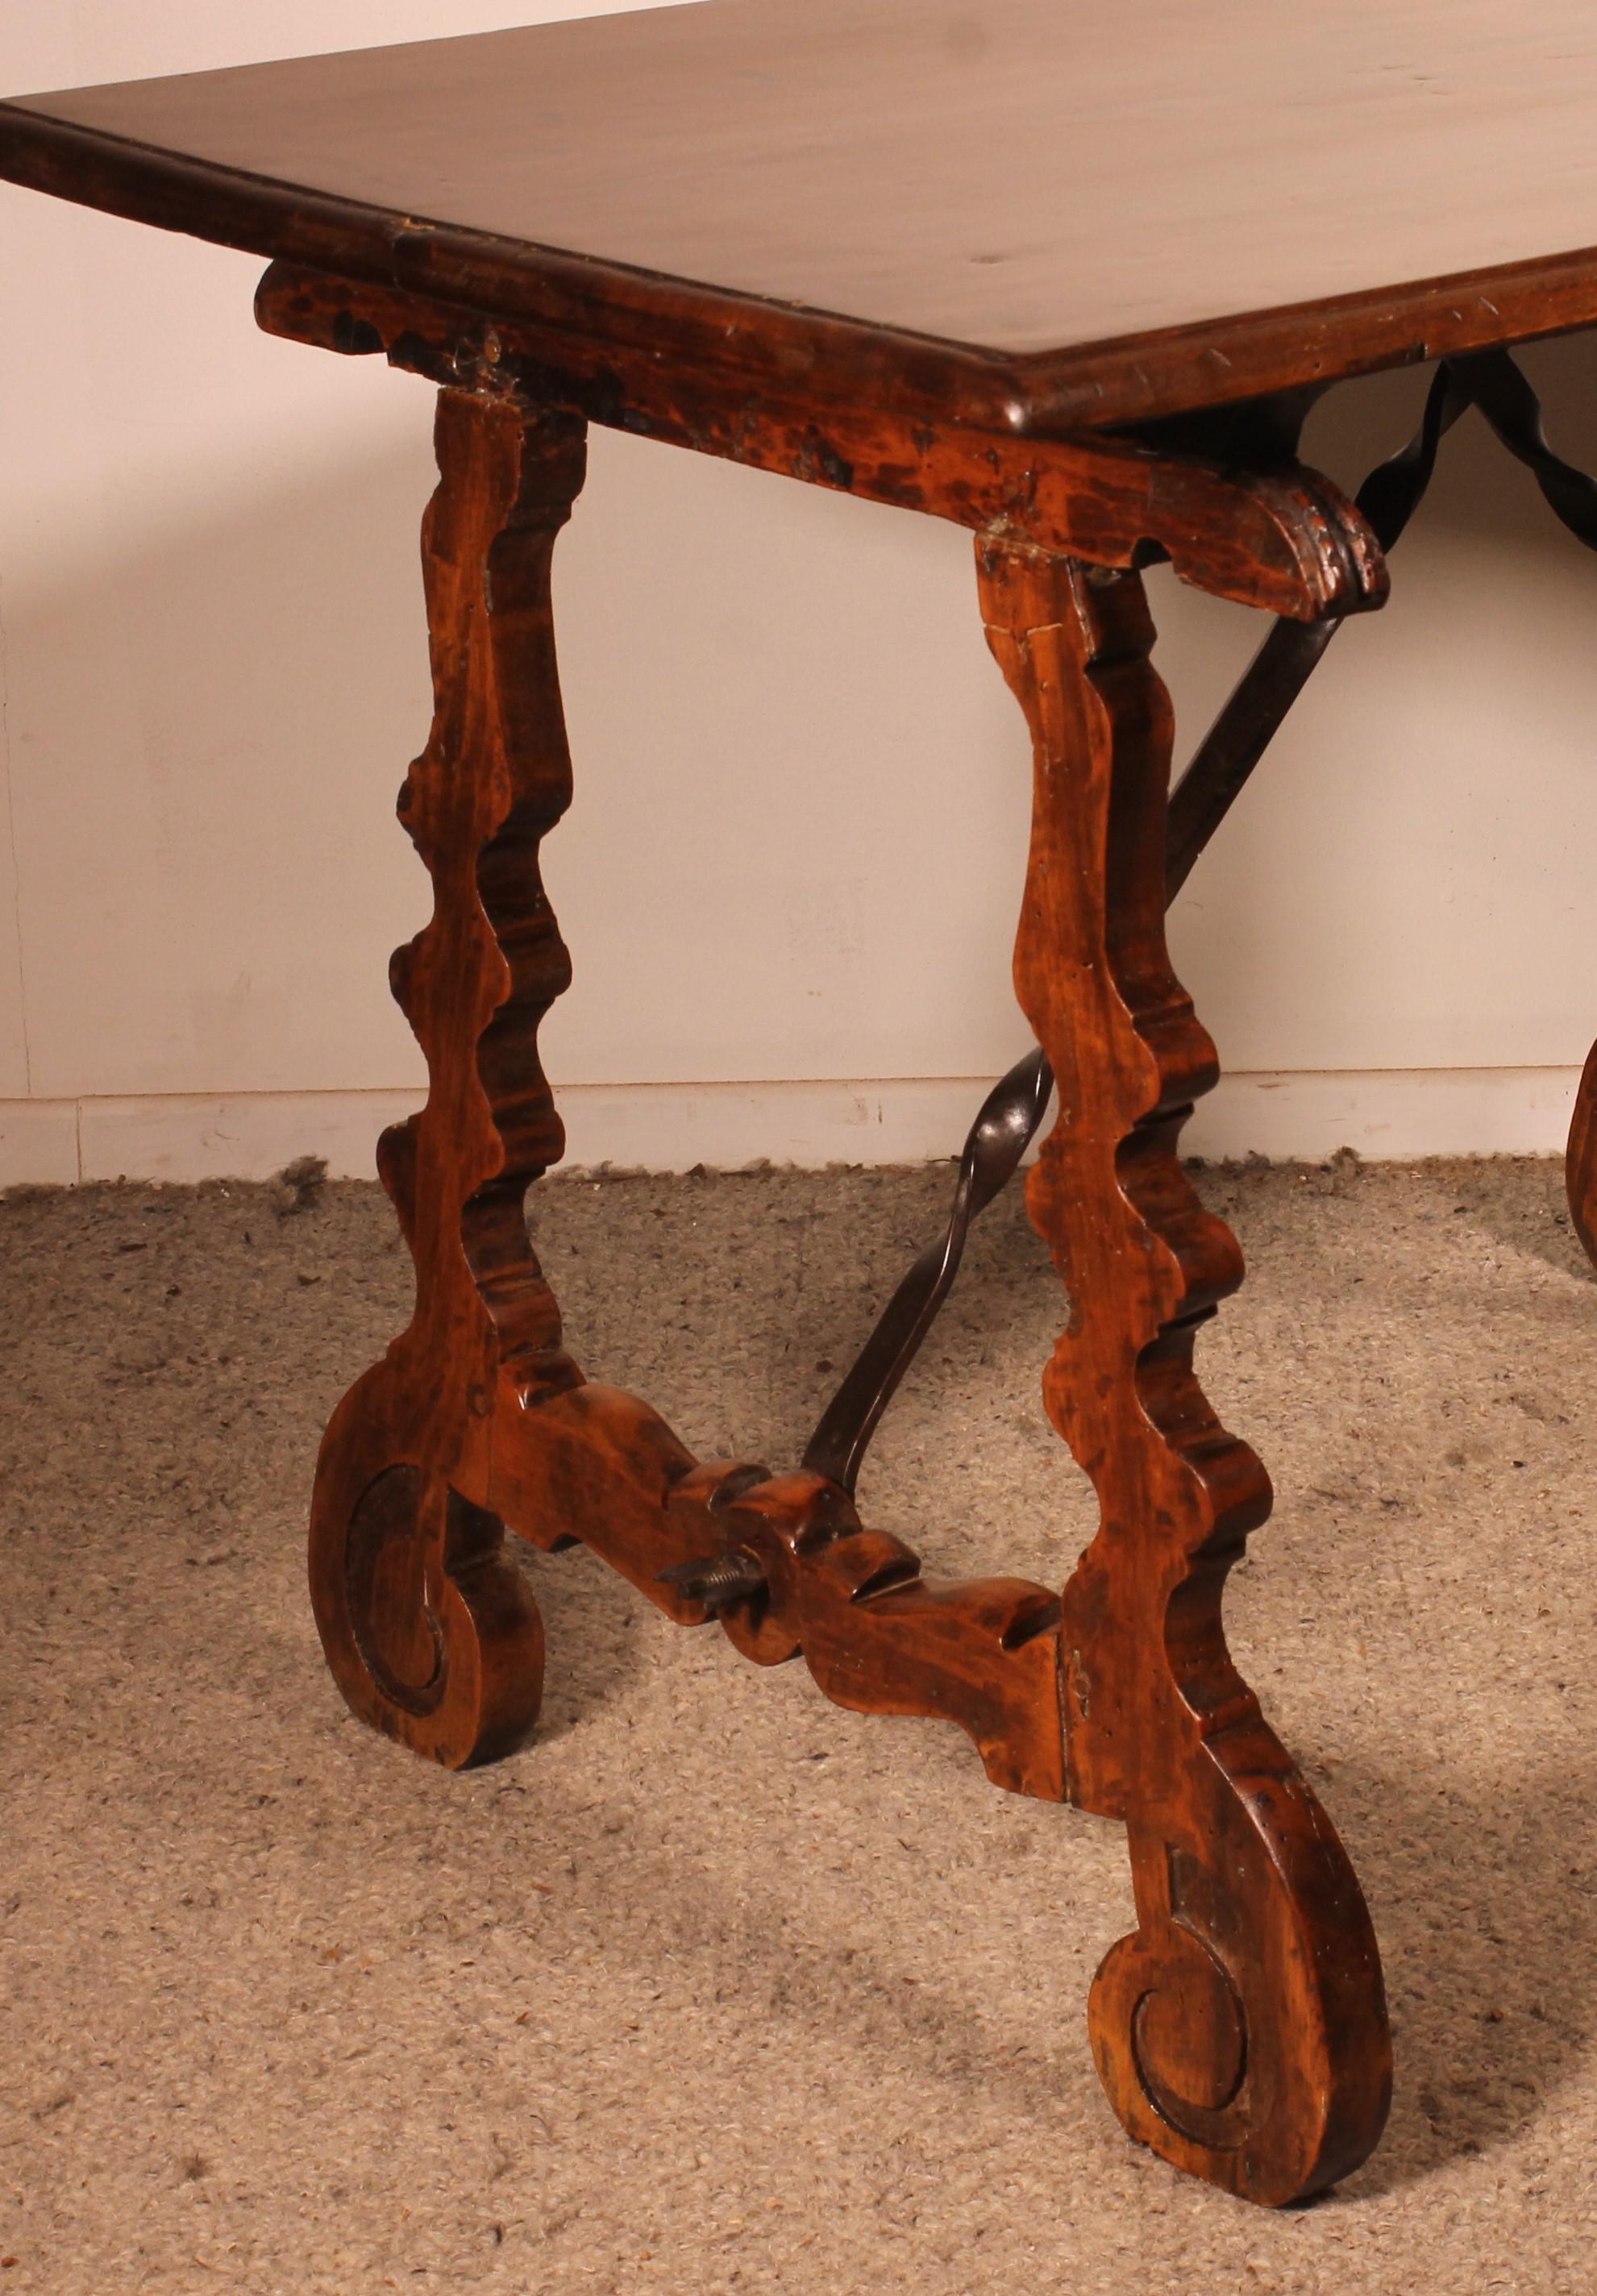 Spanischer Renaissancetisch aus Nussbaumholz aus dem 17. Jahrhundert aus Katalonien

seltener Tisch mit einer sehr schönen einteiligen Nussbaumplatte mit Corbin-Schnabel

Der Tisch hat seine originalen Scharniere an der Basis, so dass er bei Bedarf